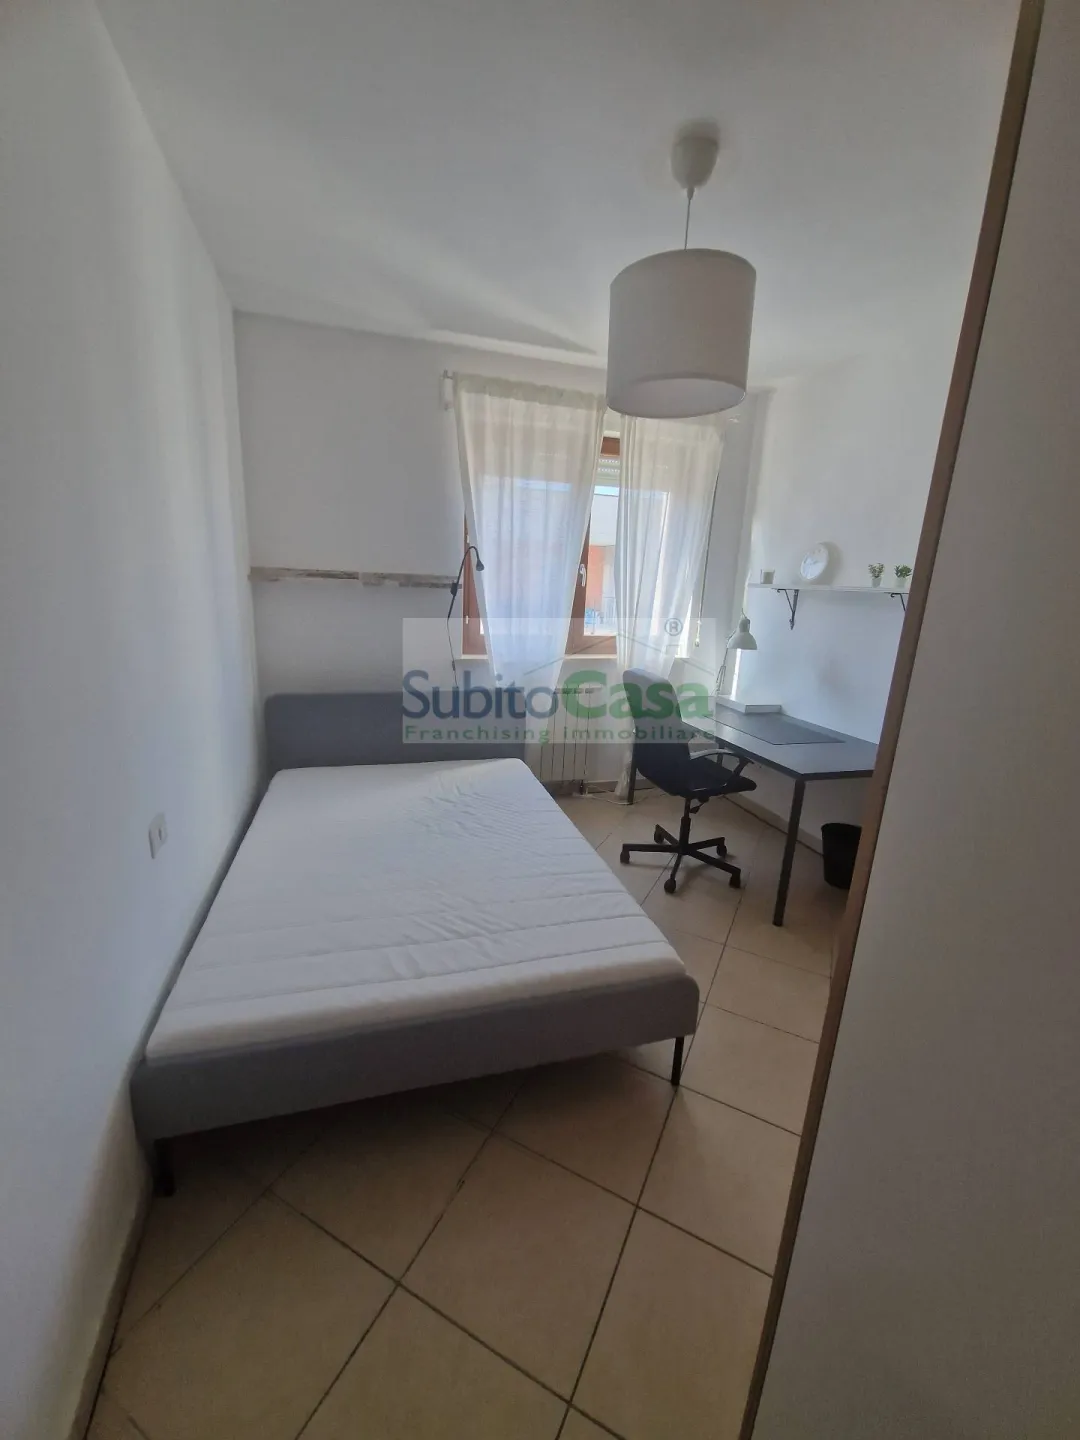 Immagine per Appartamento in affitto a Chieti Via Spalato